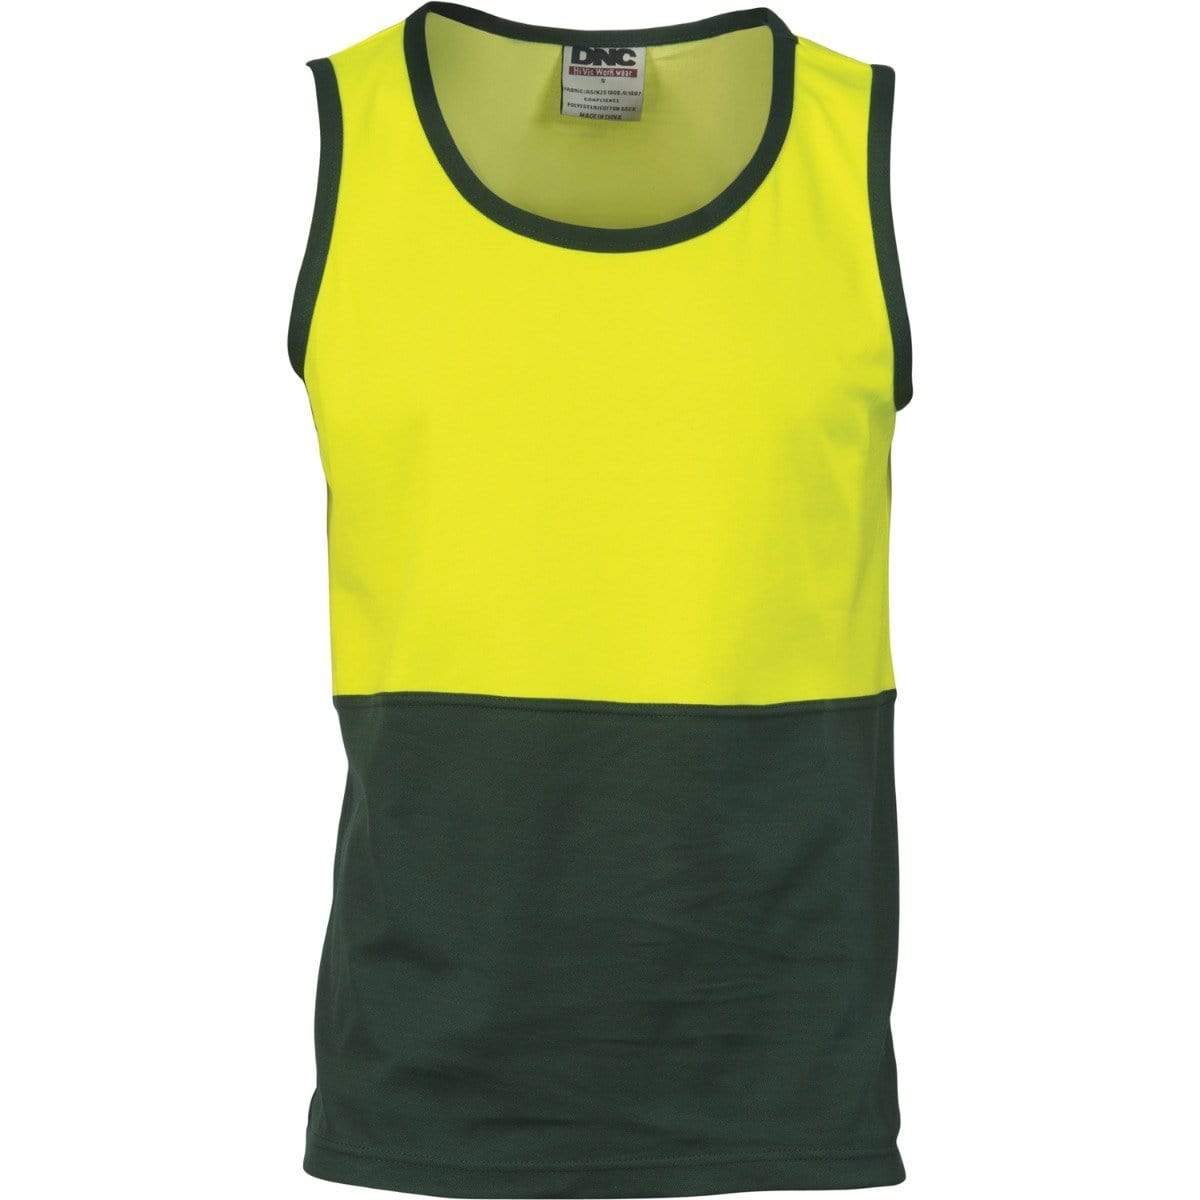 Dnc Workwear Cotton Back Two-tone Singlet -  3841 Work Wear DNC Workwear Yellow/Bottle Green XS 